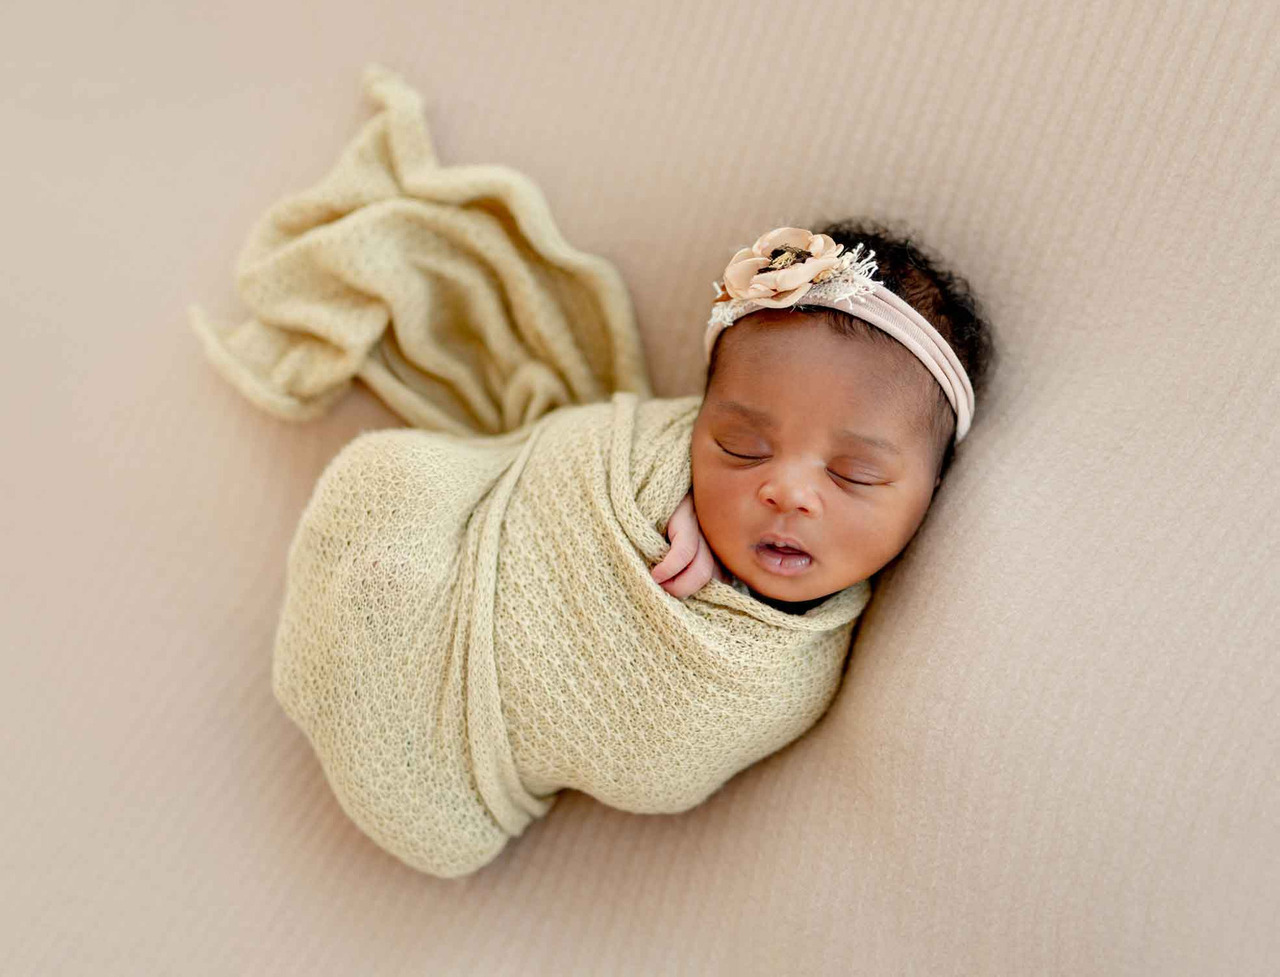 Foto neném recém nascido